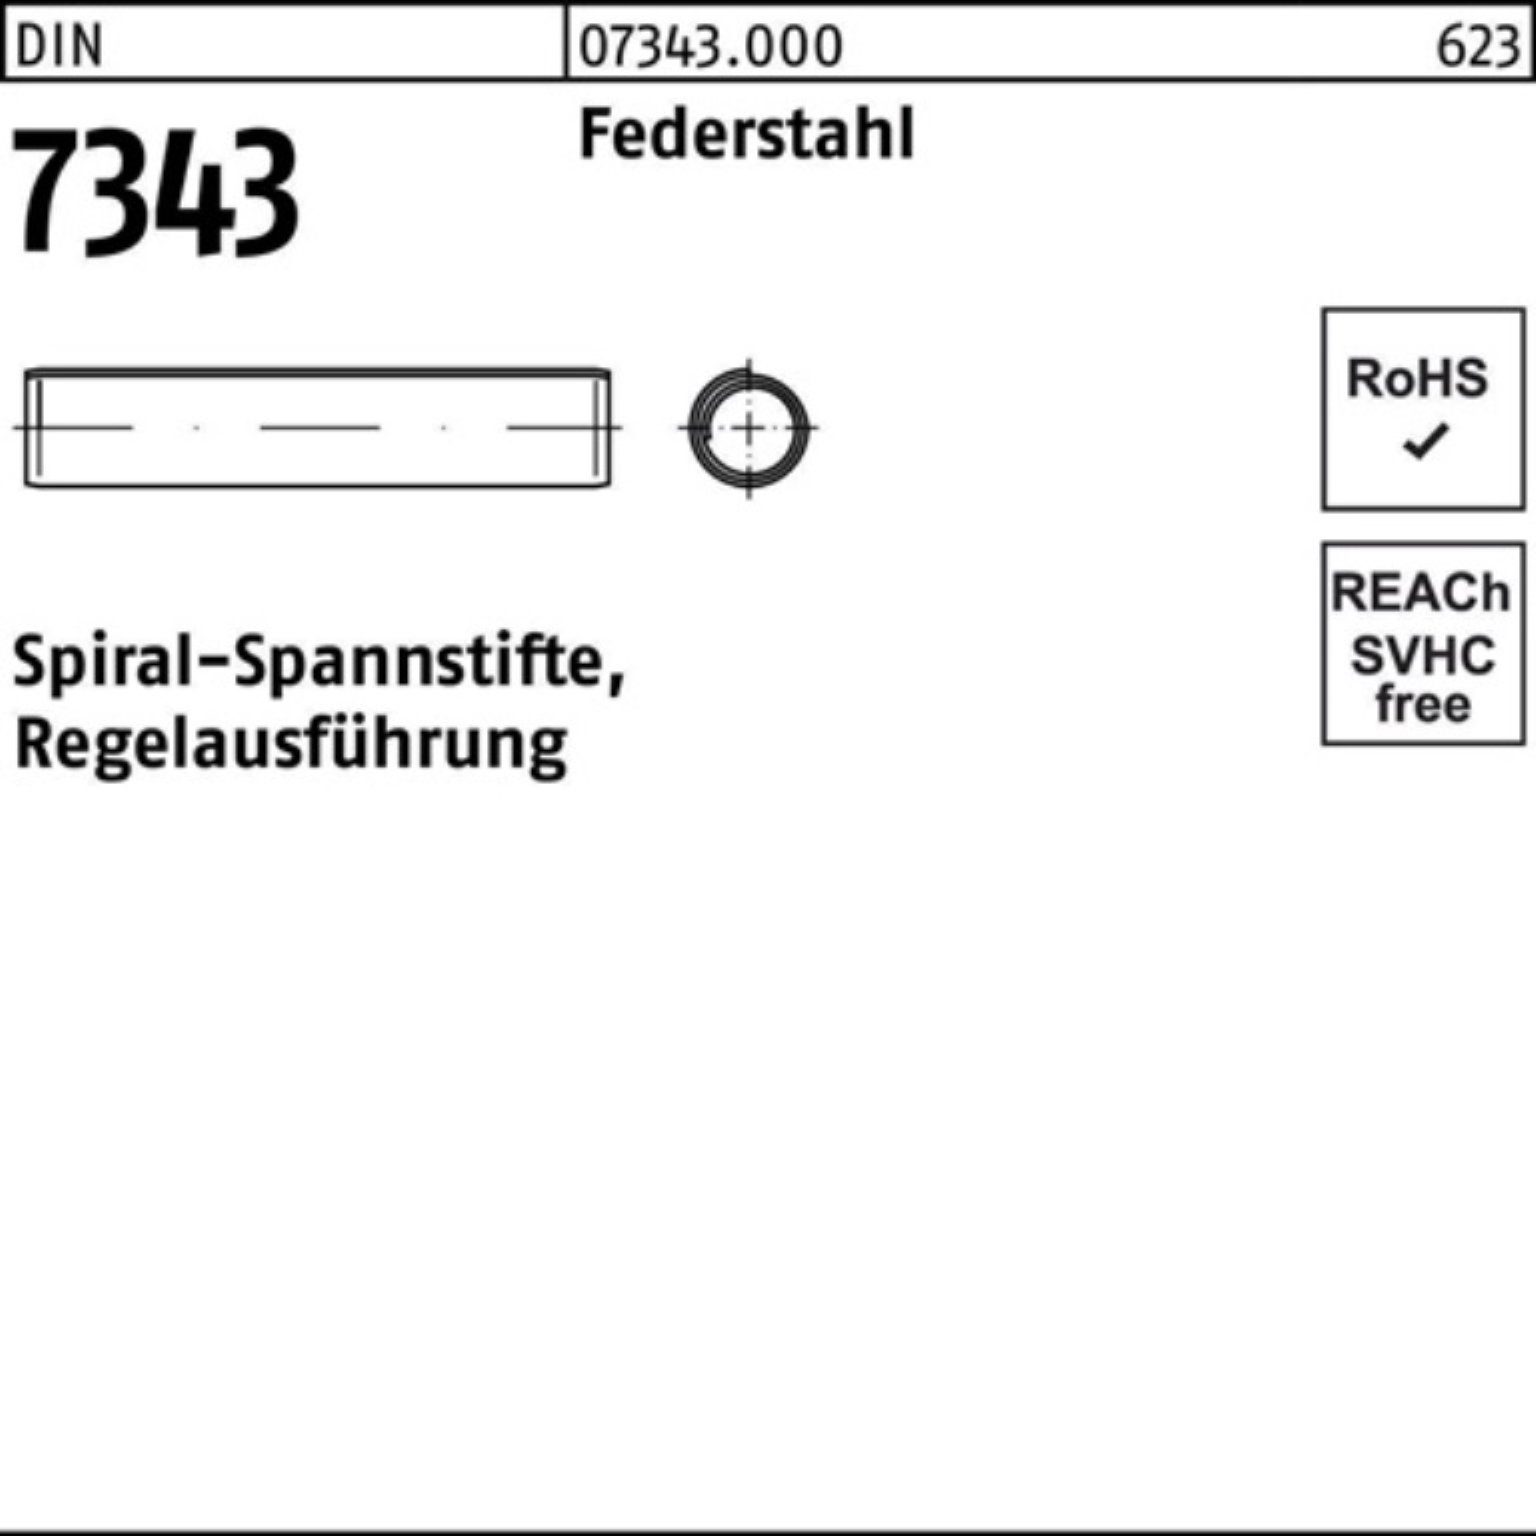 4x Pack Federstahl 500er 50 8750 DIN Reyher Regelau Spiralspannstift Spannstift 7343/ISO